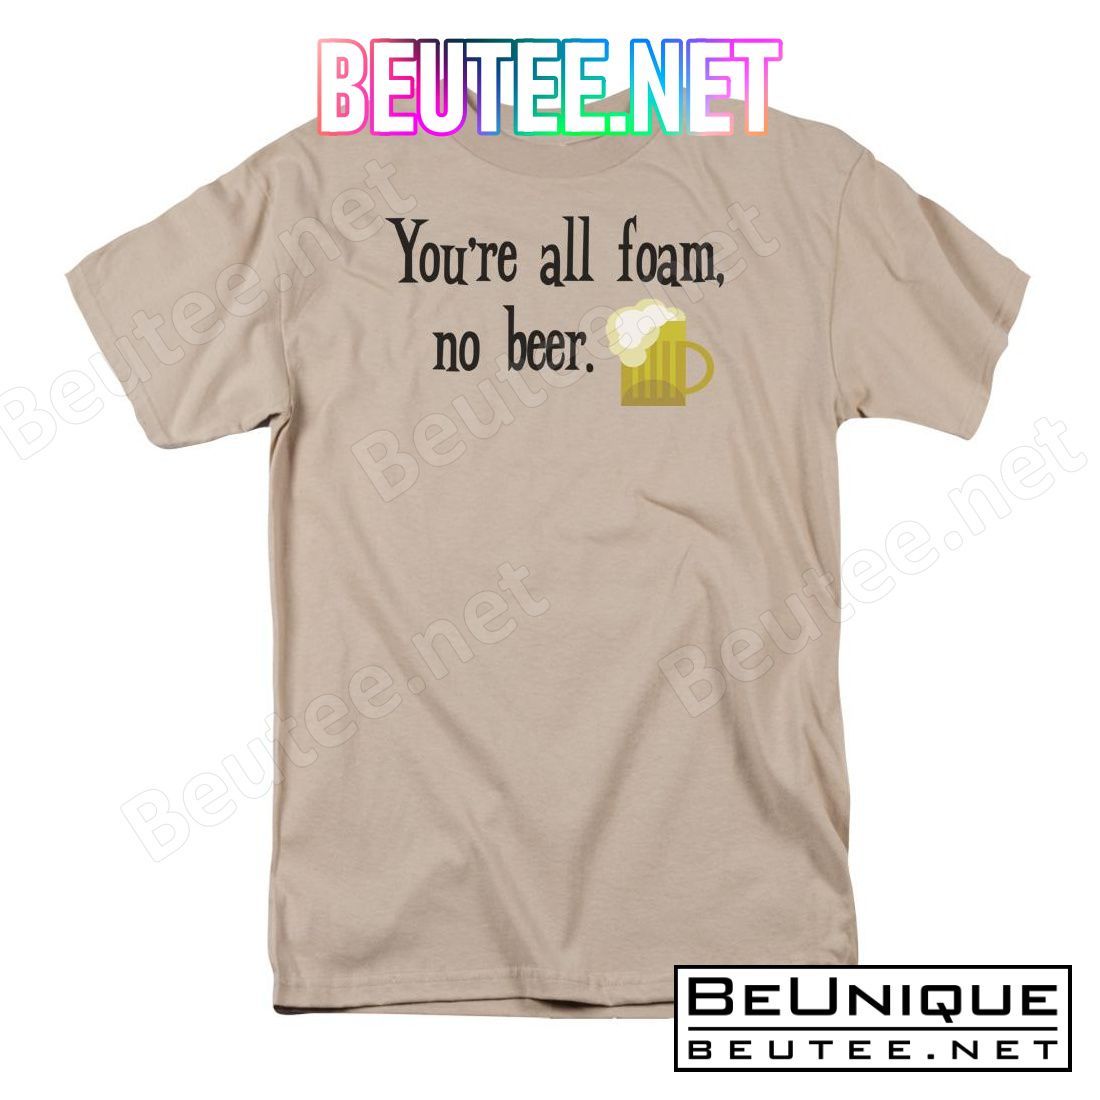 All Foam No Beer T-shirt